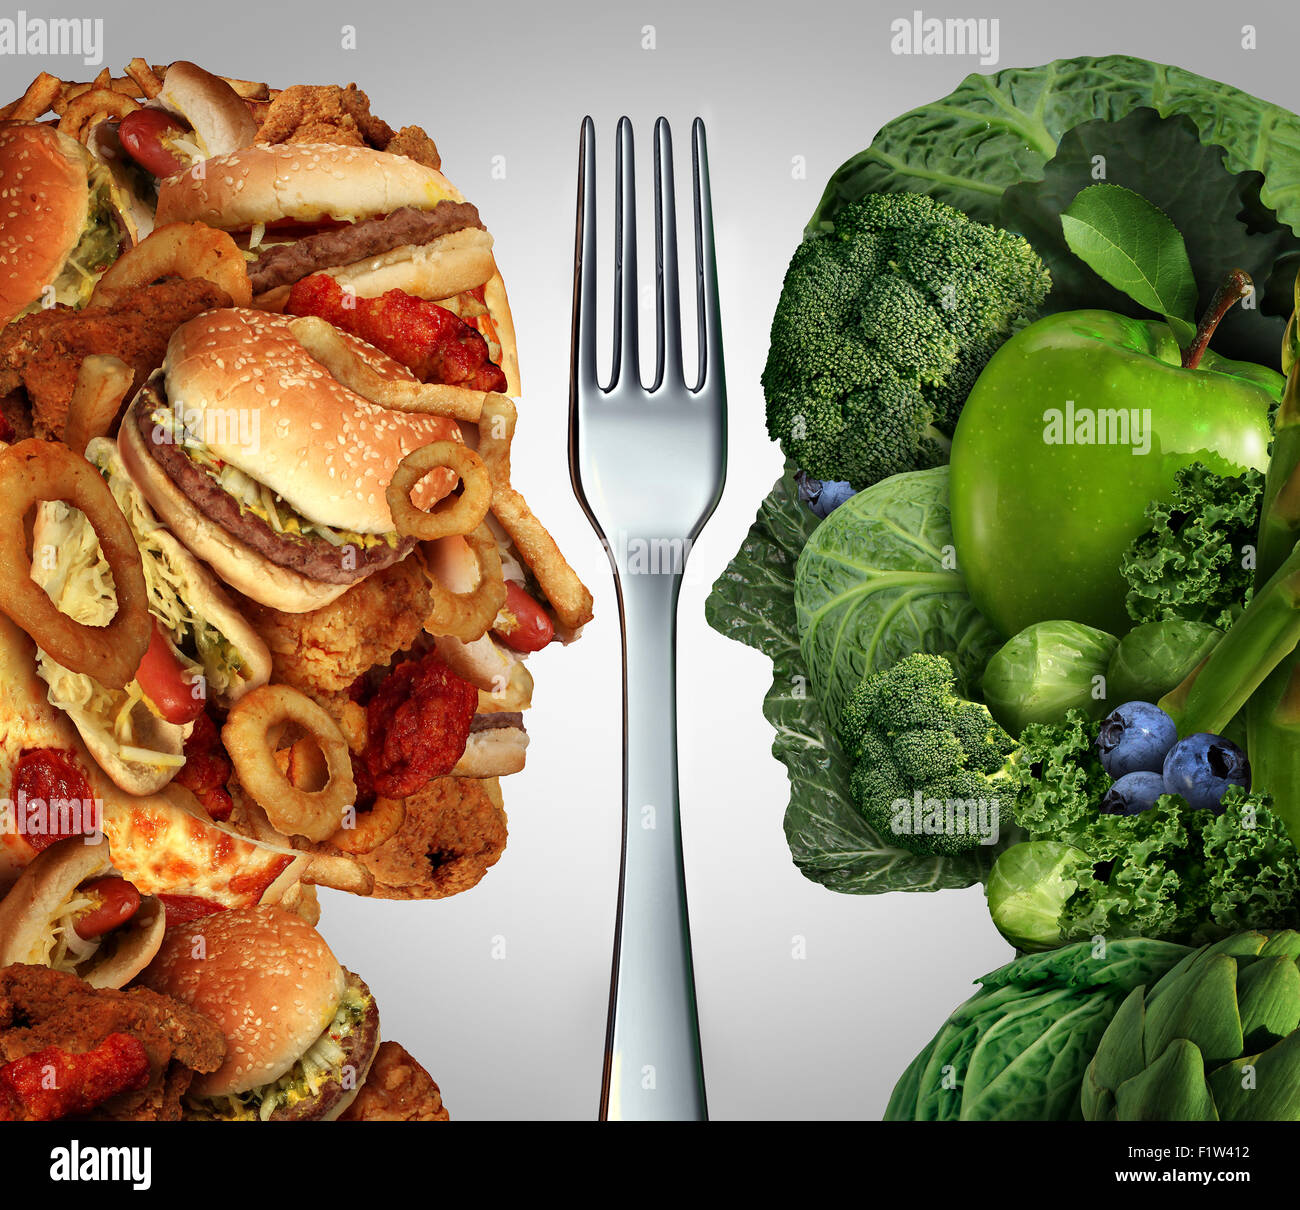 Ernährung Entscheidung Konzept und Ernährung Entscheidungen Dilemma zwischen gesunden gutes frisches Obst und Gemüse oder fettig Cholesterin reichen Fast-Food in Form eines menschlichen Kopfes geteilt durch eine Gabel als Symbol für den Versuch zu entscheiden, was zu essen. Stockfoto